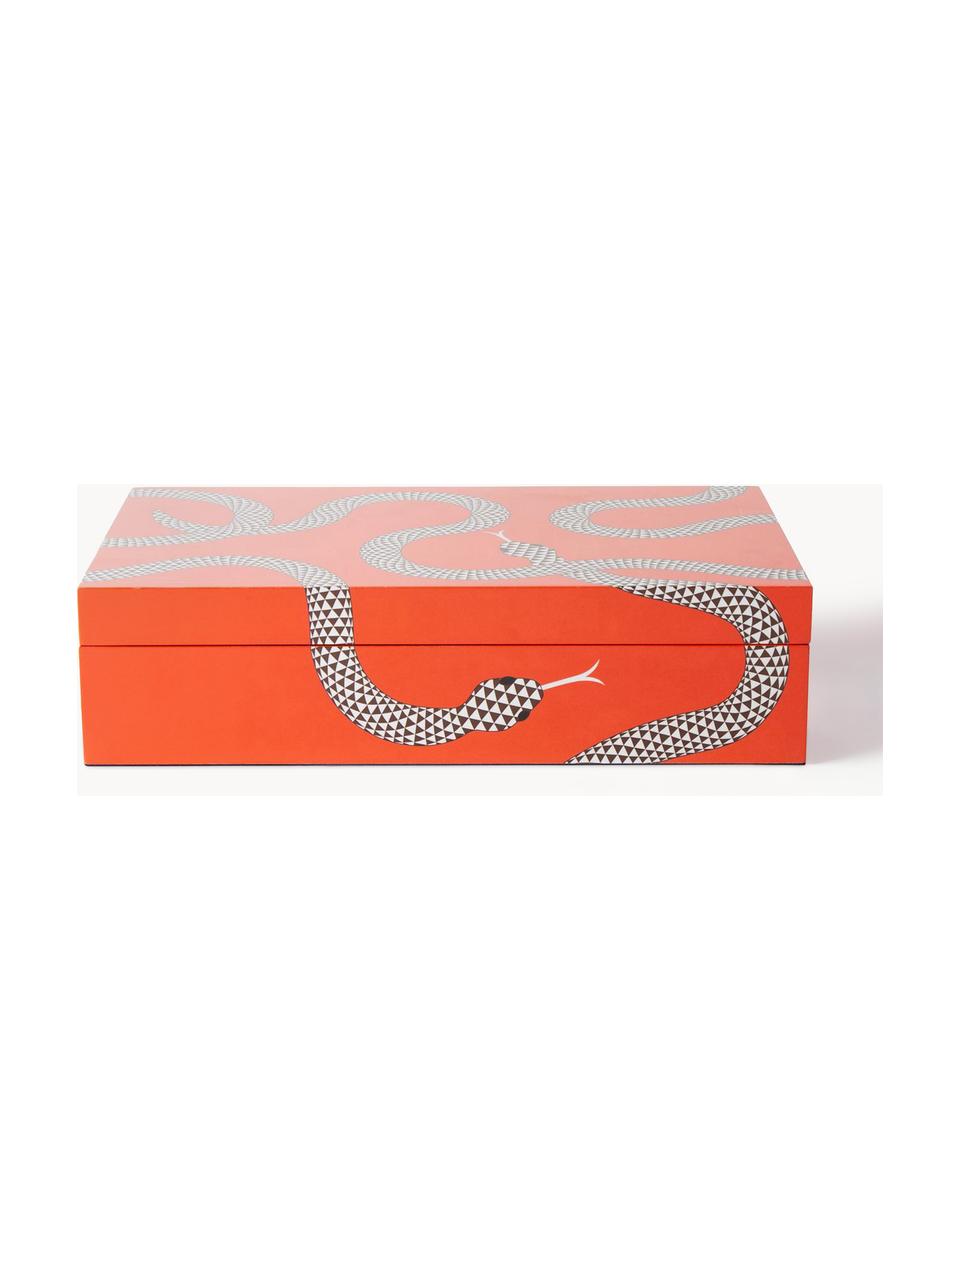 Handgefertigte Aufbewahrungsbox Eden, Holz, lackiert, Orange, Weiß, B 31 x T 20 cm